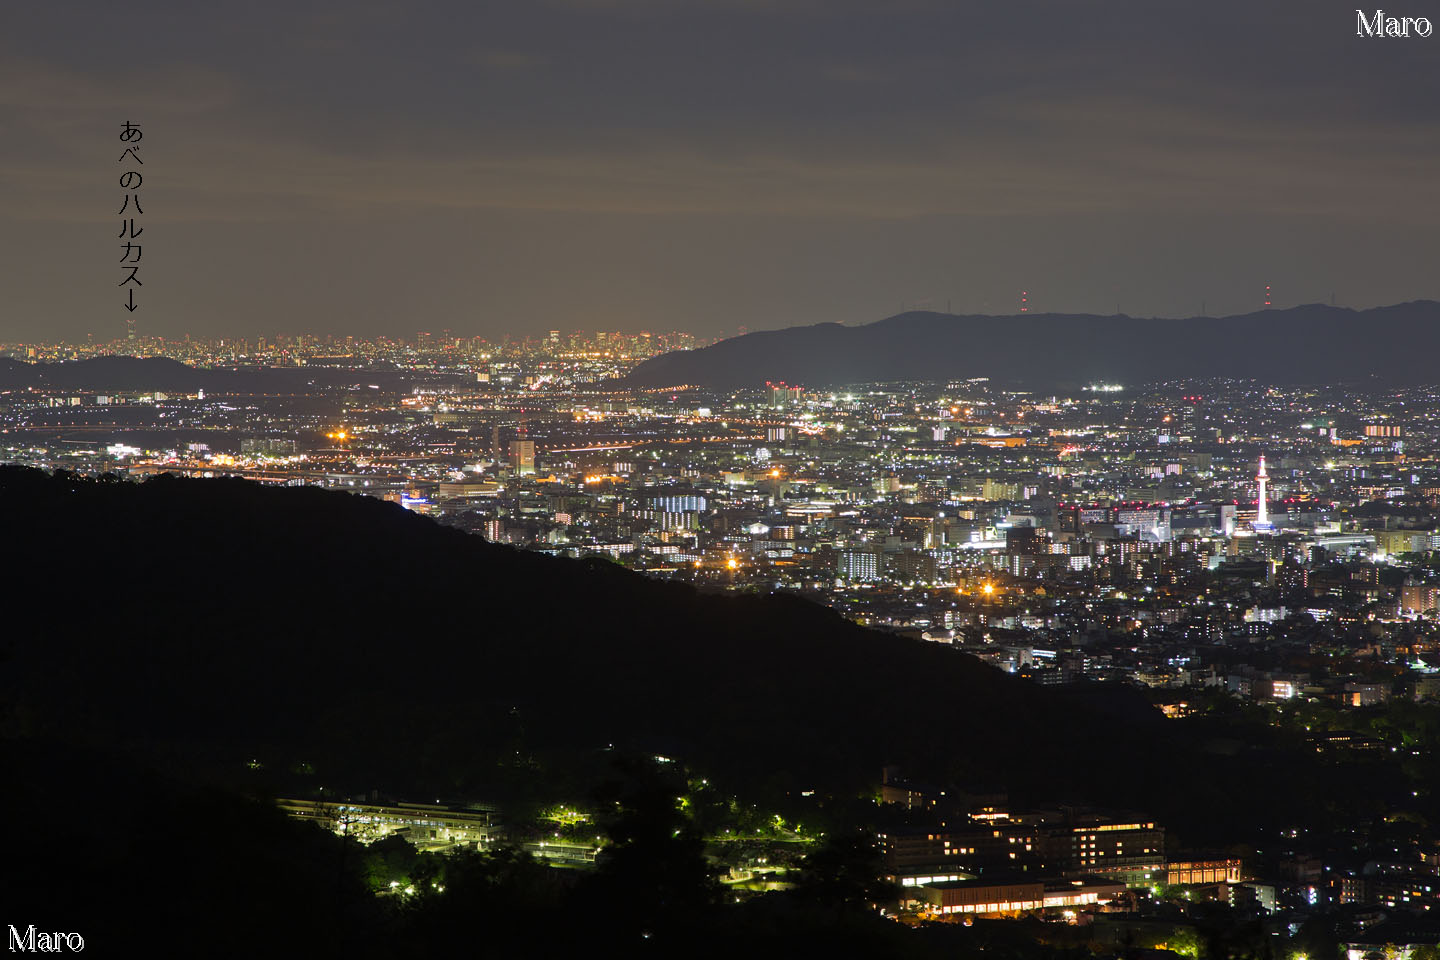 大文字山から京都南部、大阪方面の夜景を望む 2013年5月